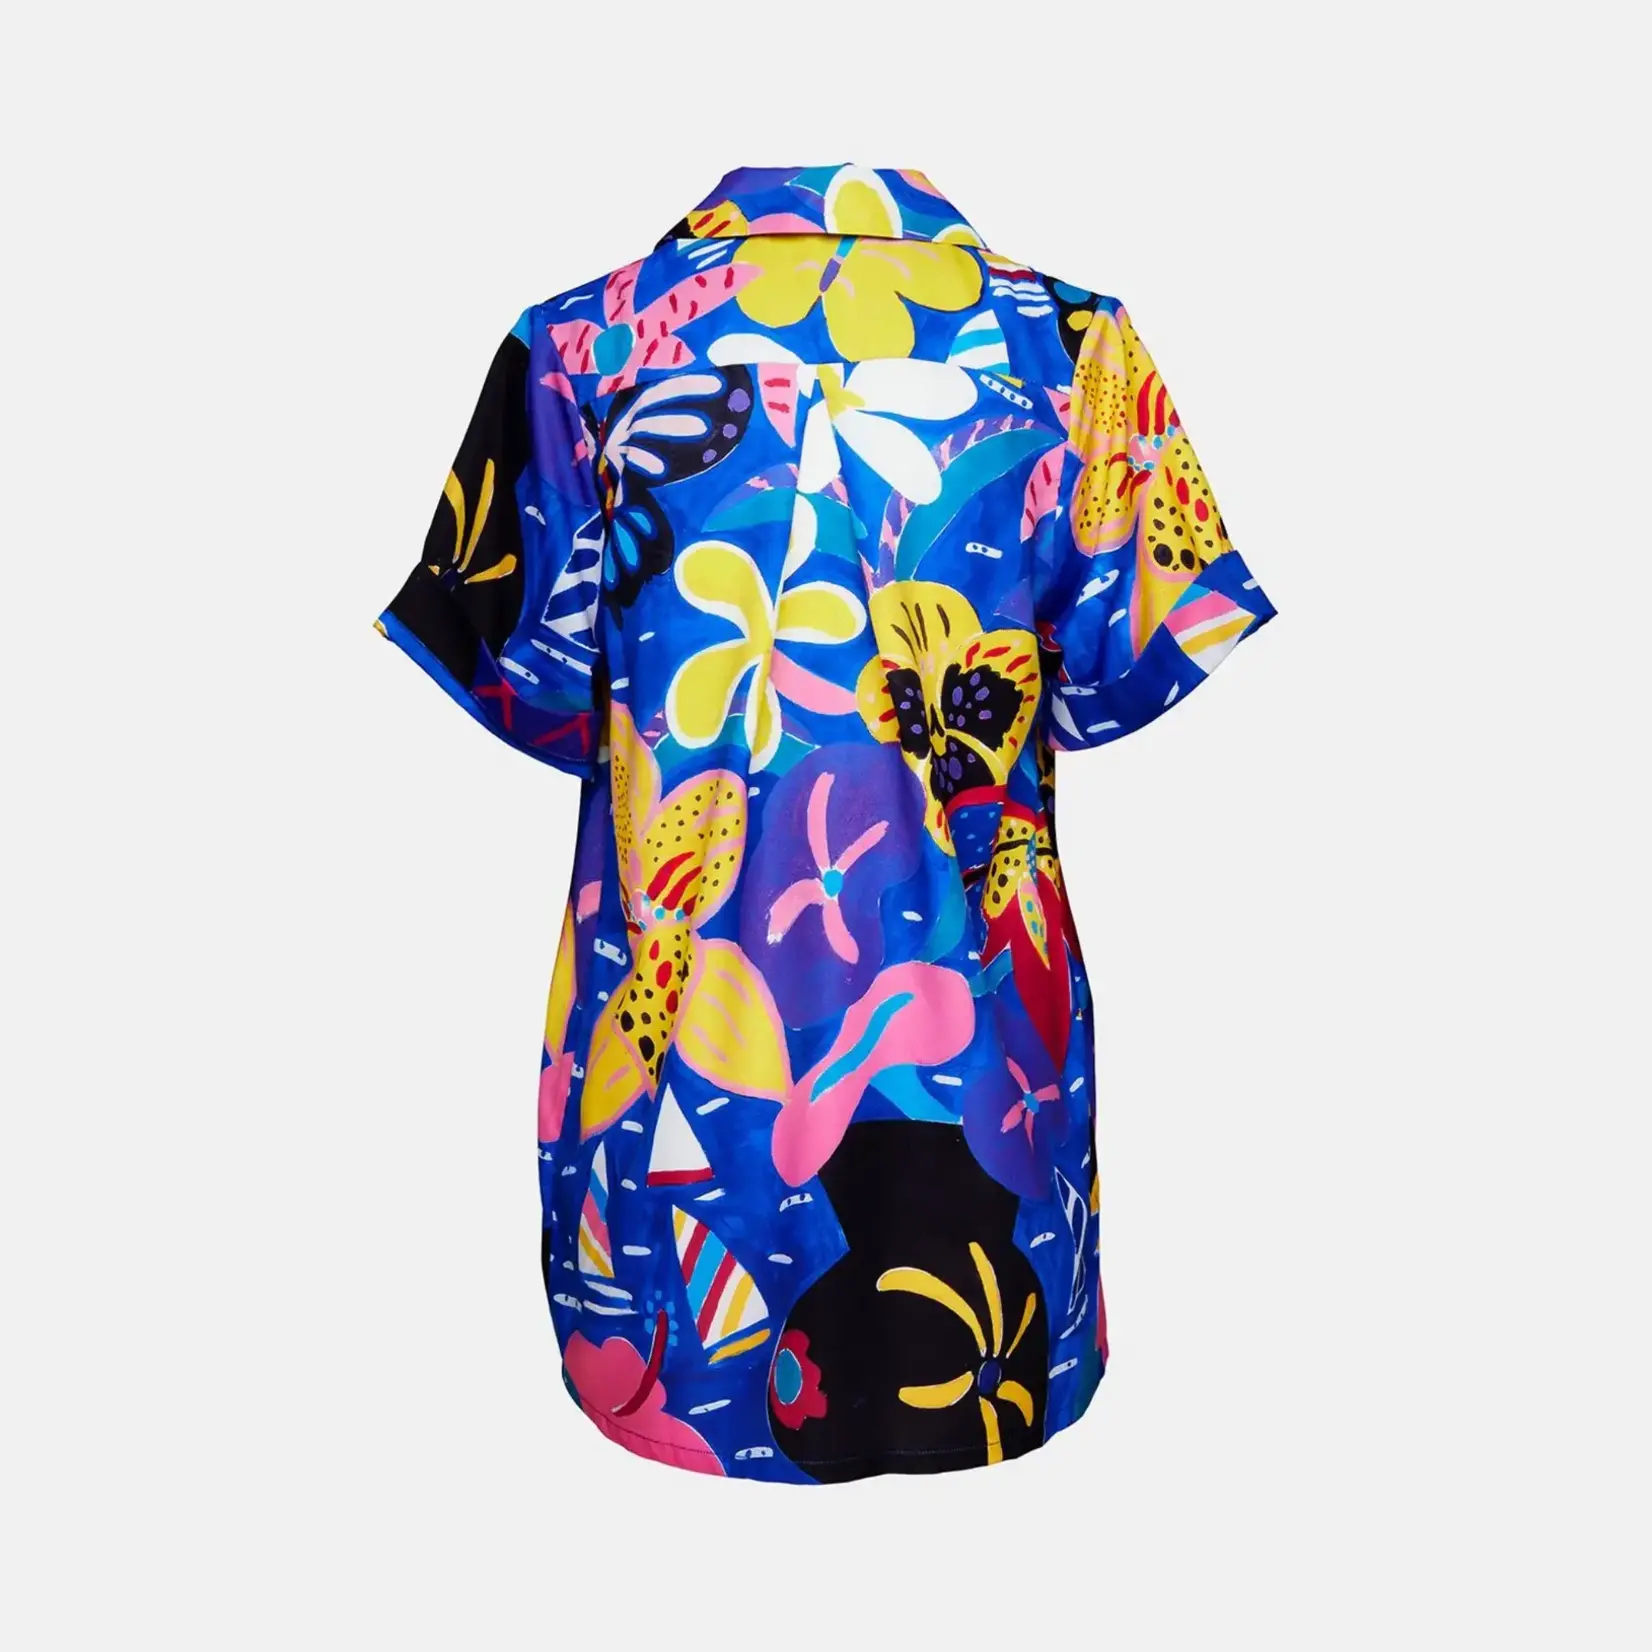 Clothing 'Vases' Hawaiian shirt - RWB x Ken Done